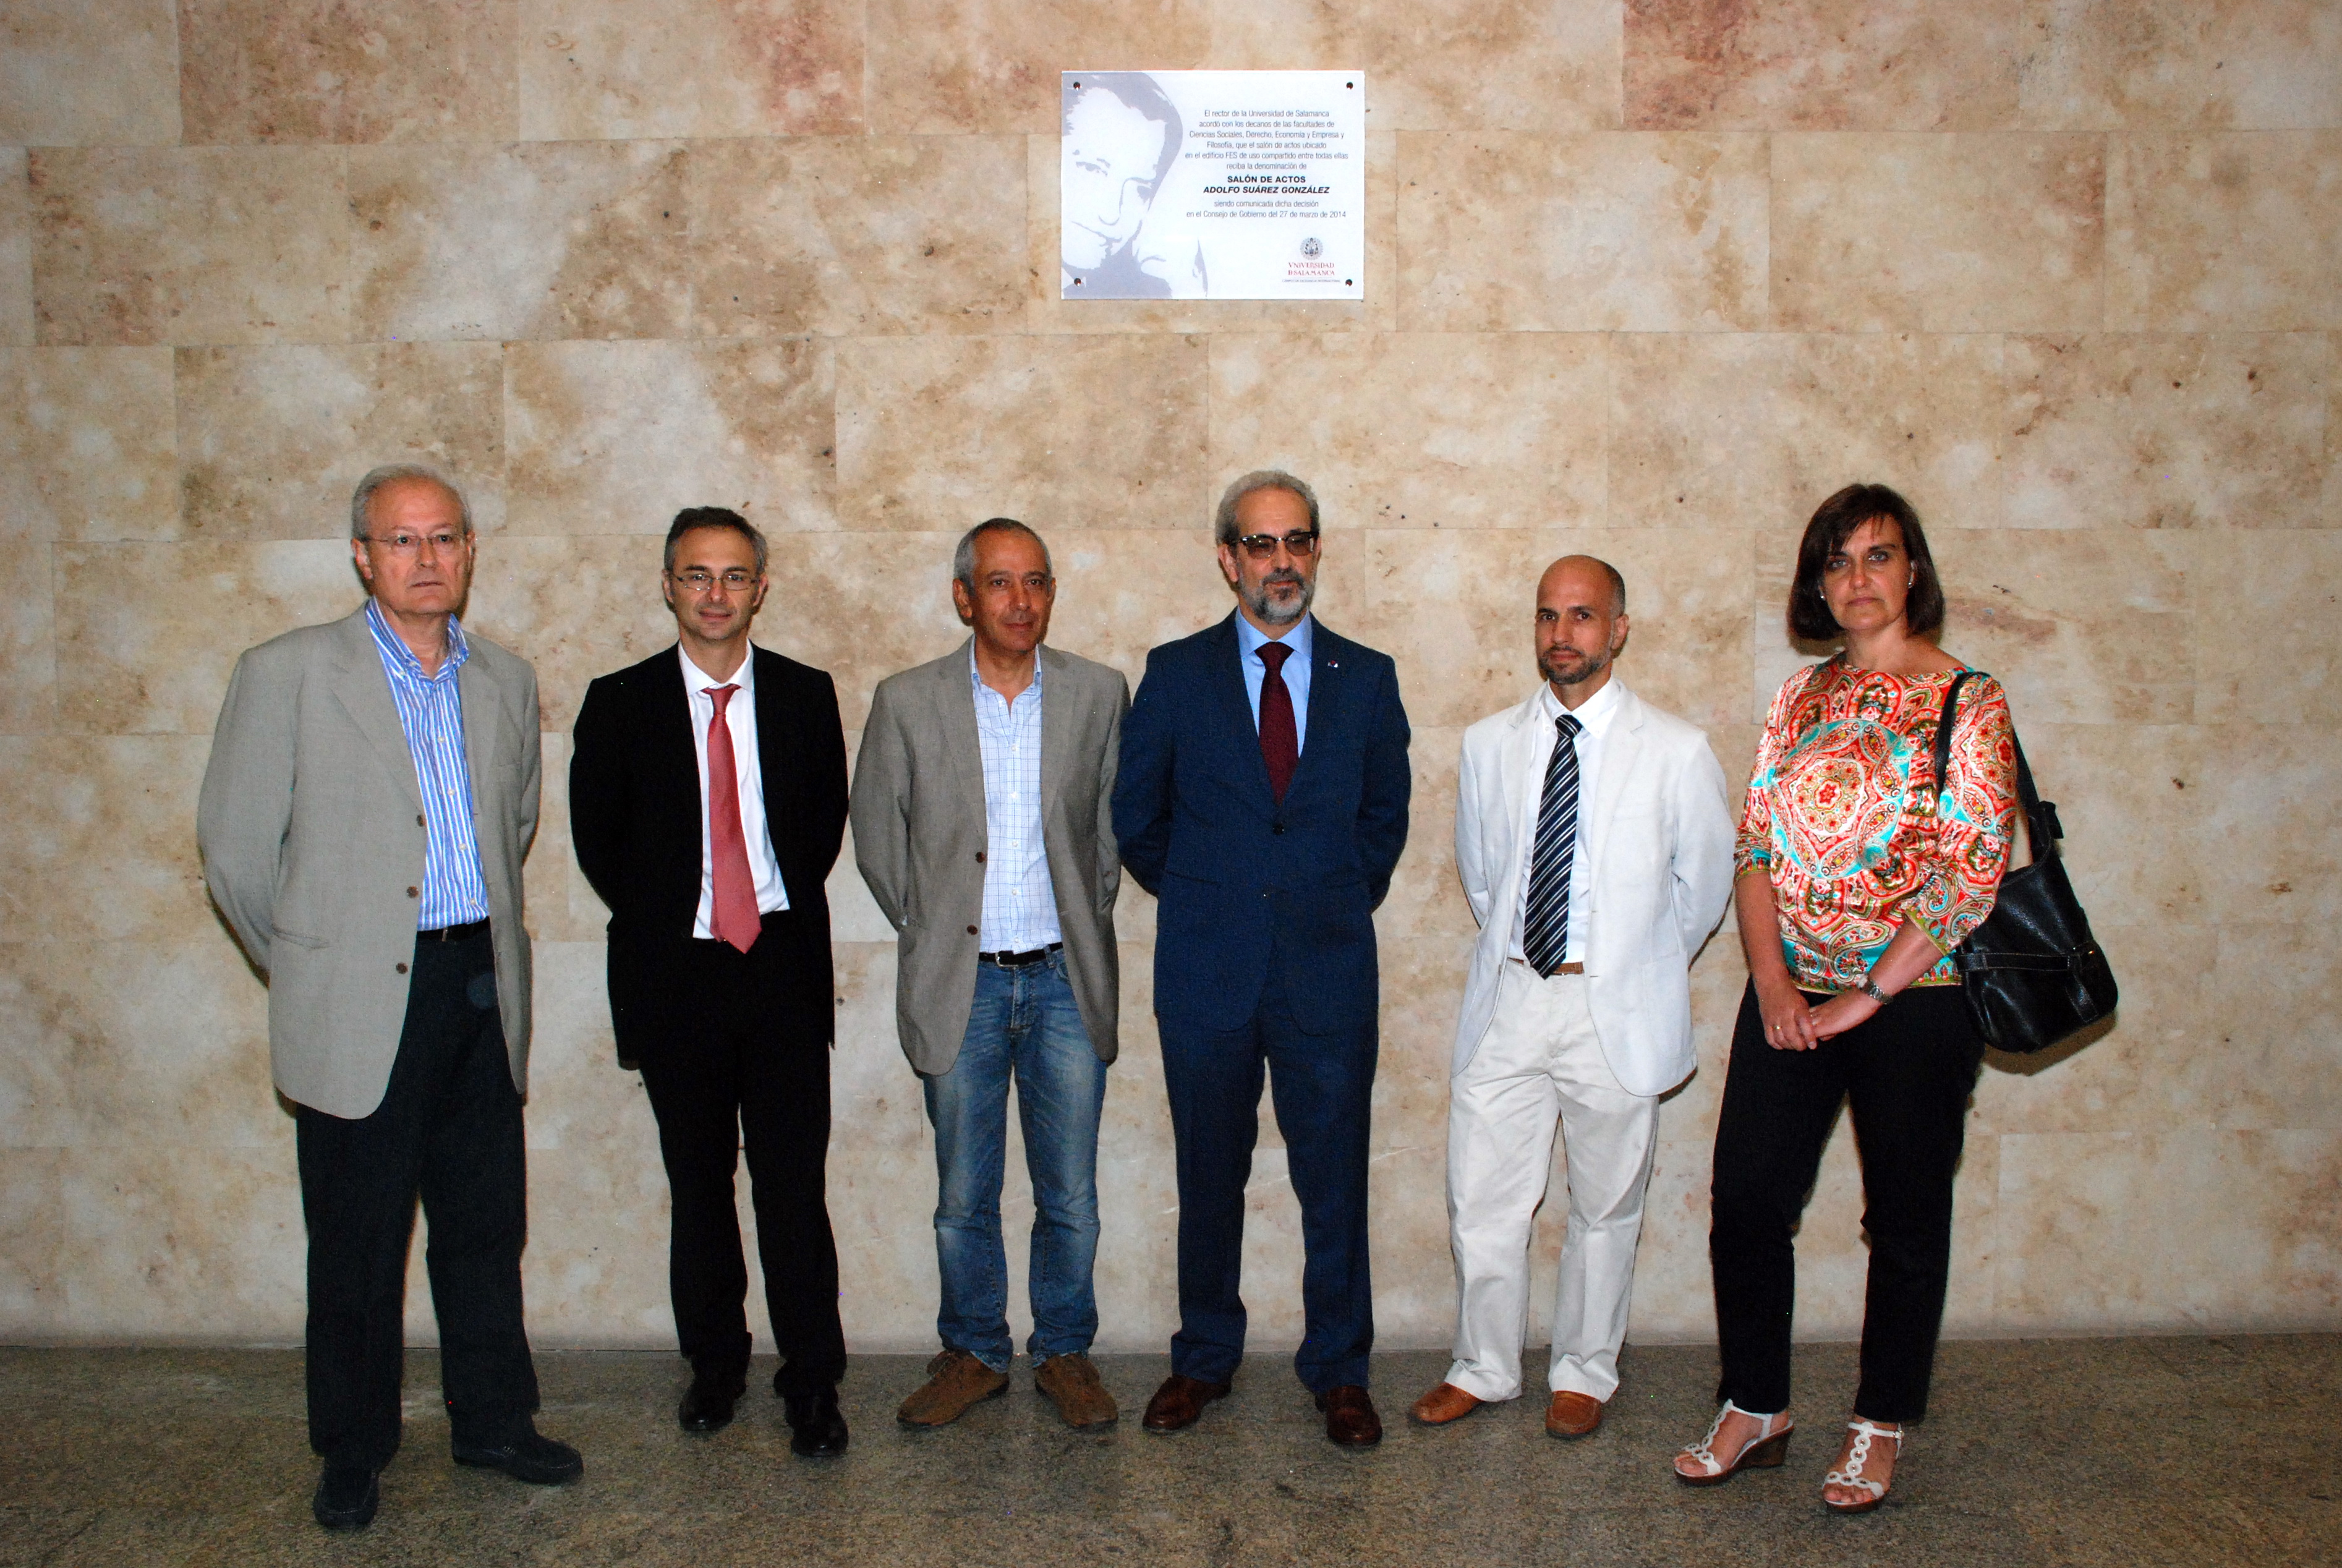 El salón de actos del edificio FES recibe el nombre de Adolfo Suárez, en recuerdo del expresidente del Gobierno y antiguo alumno de la Universidad de Salamanca